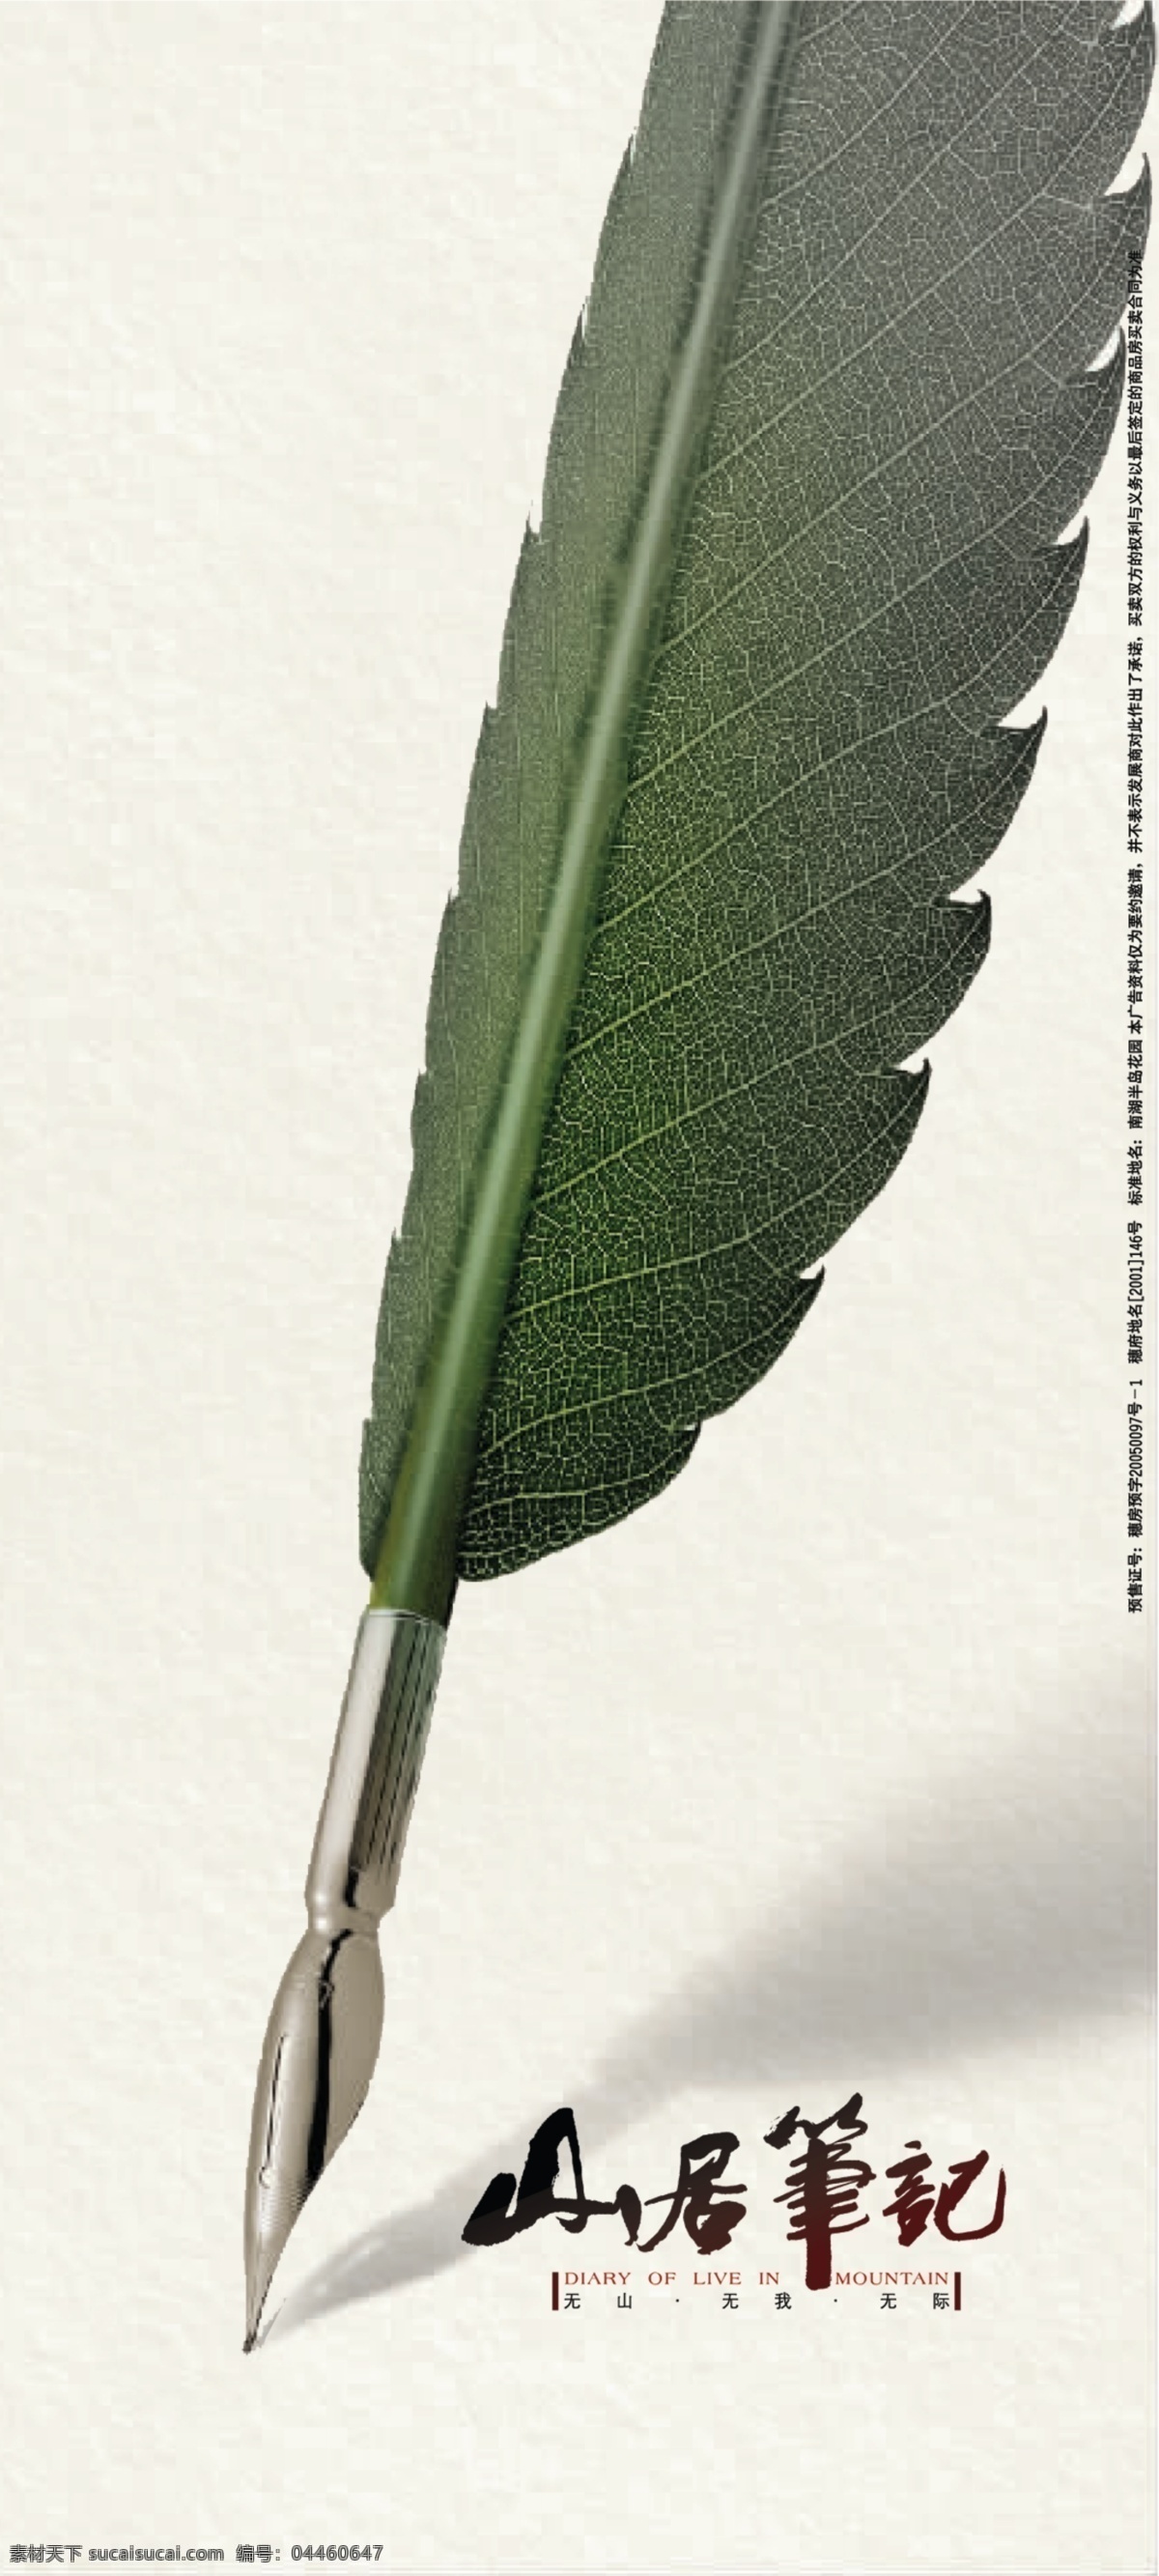 创意的羽毛笔 钢笔 创意 绿色叶子笔 山居笔记 地产 地产广告